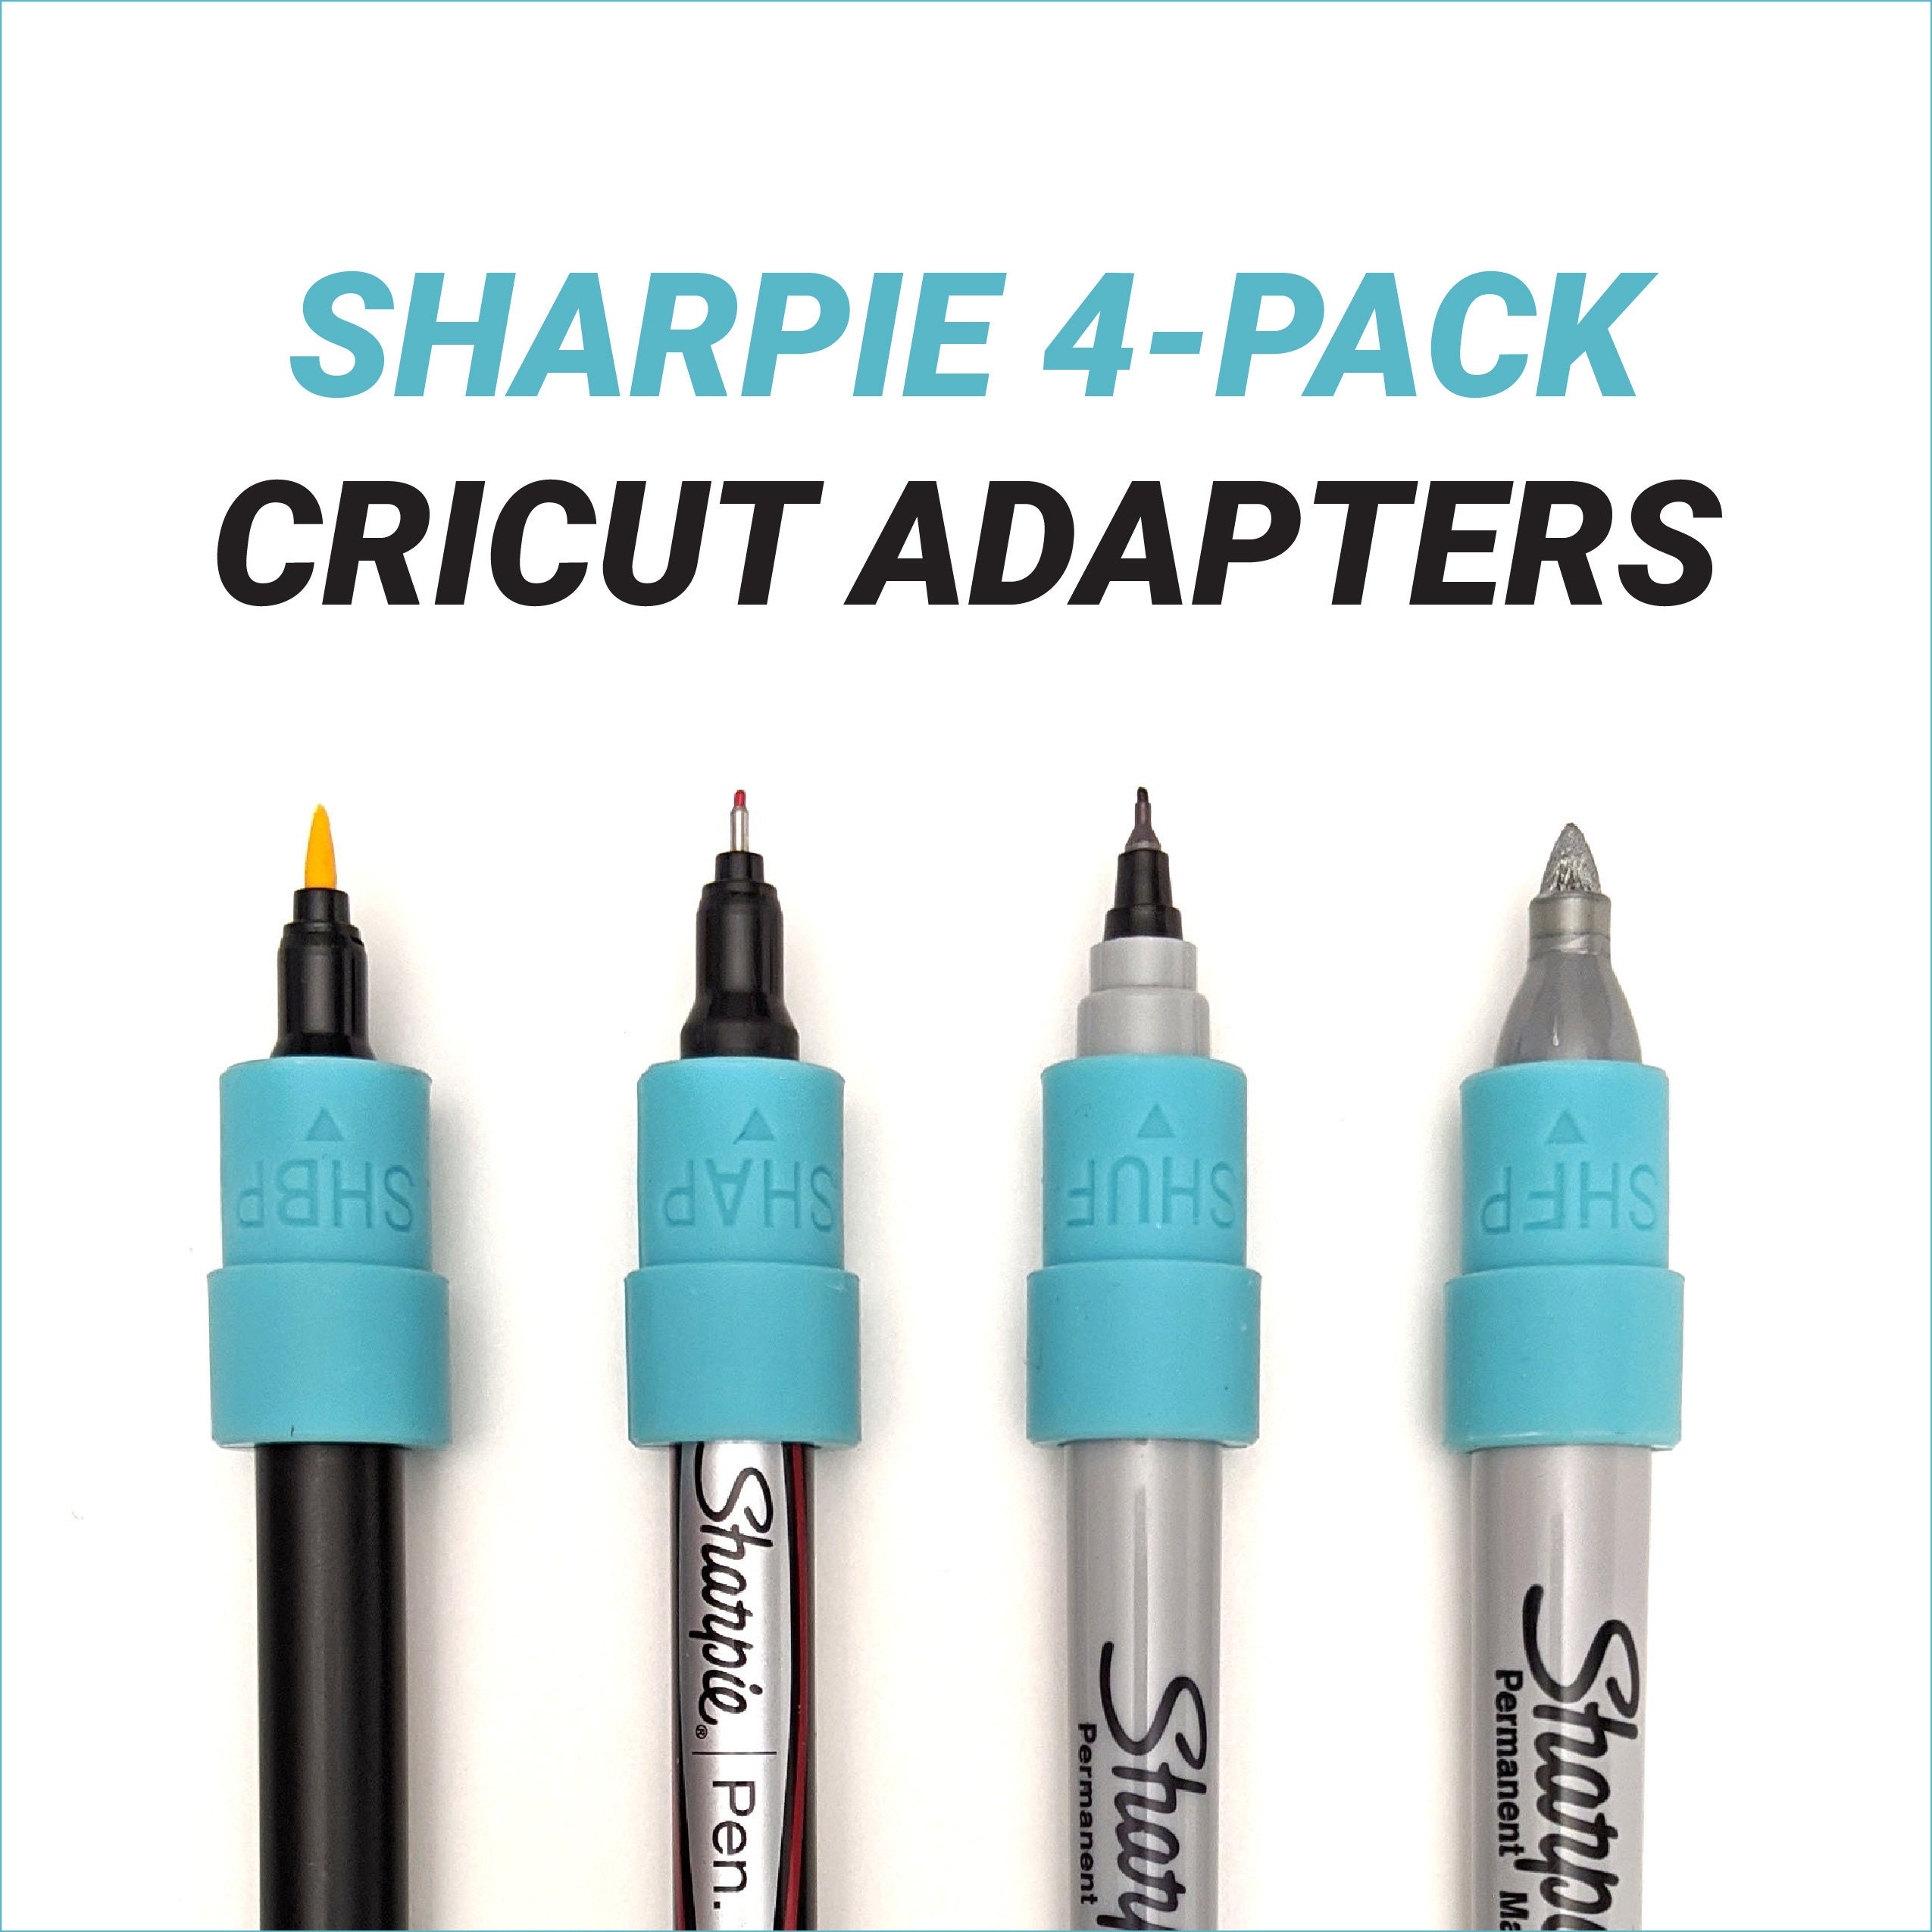 Cricut Marker Pen Sets fits Cricut Maker & Explore - Draw instead